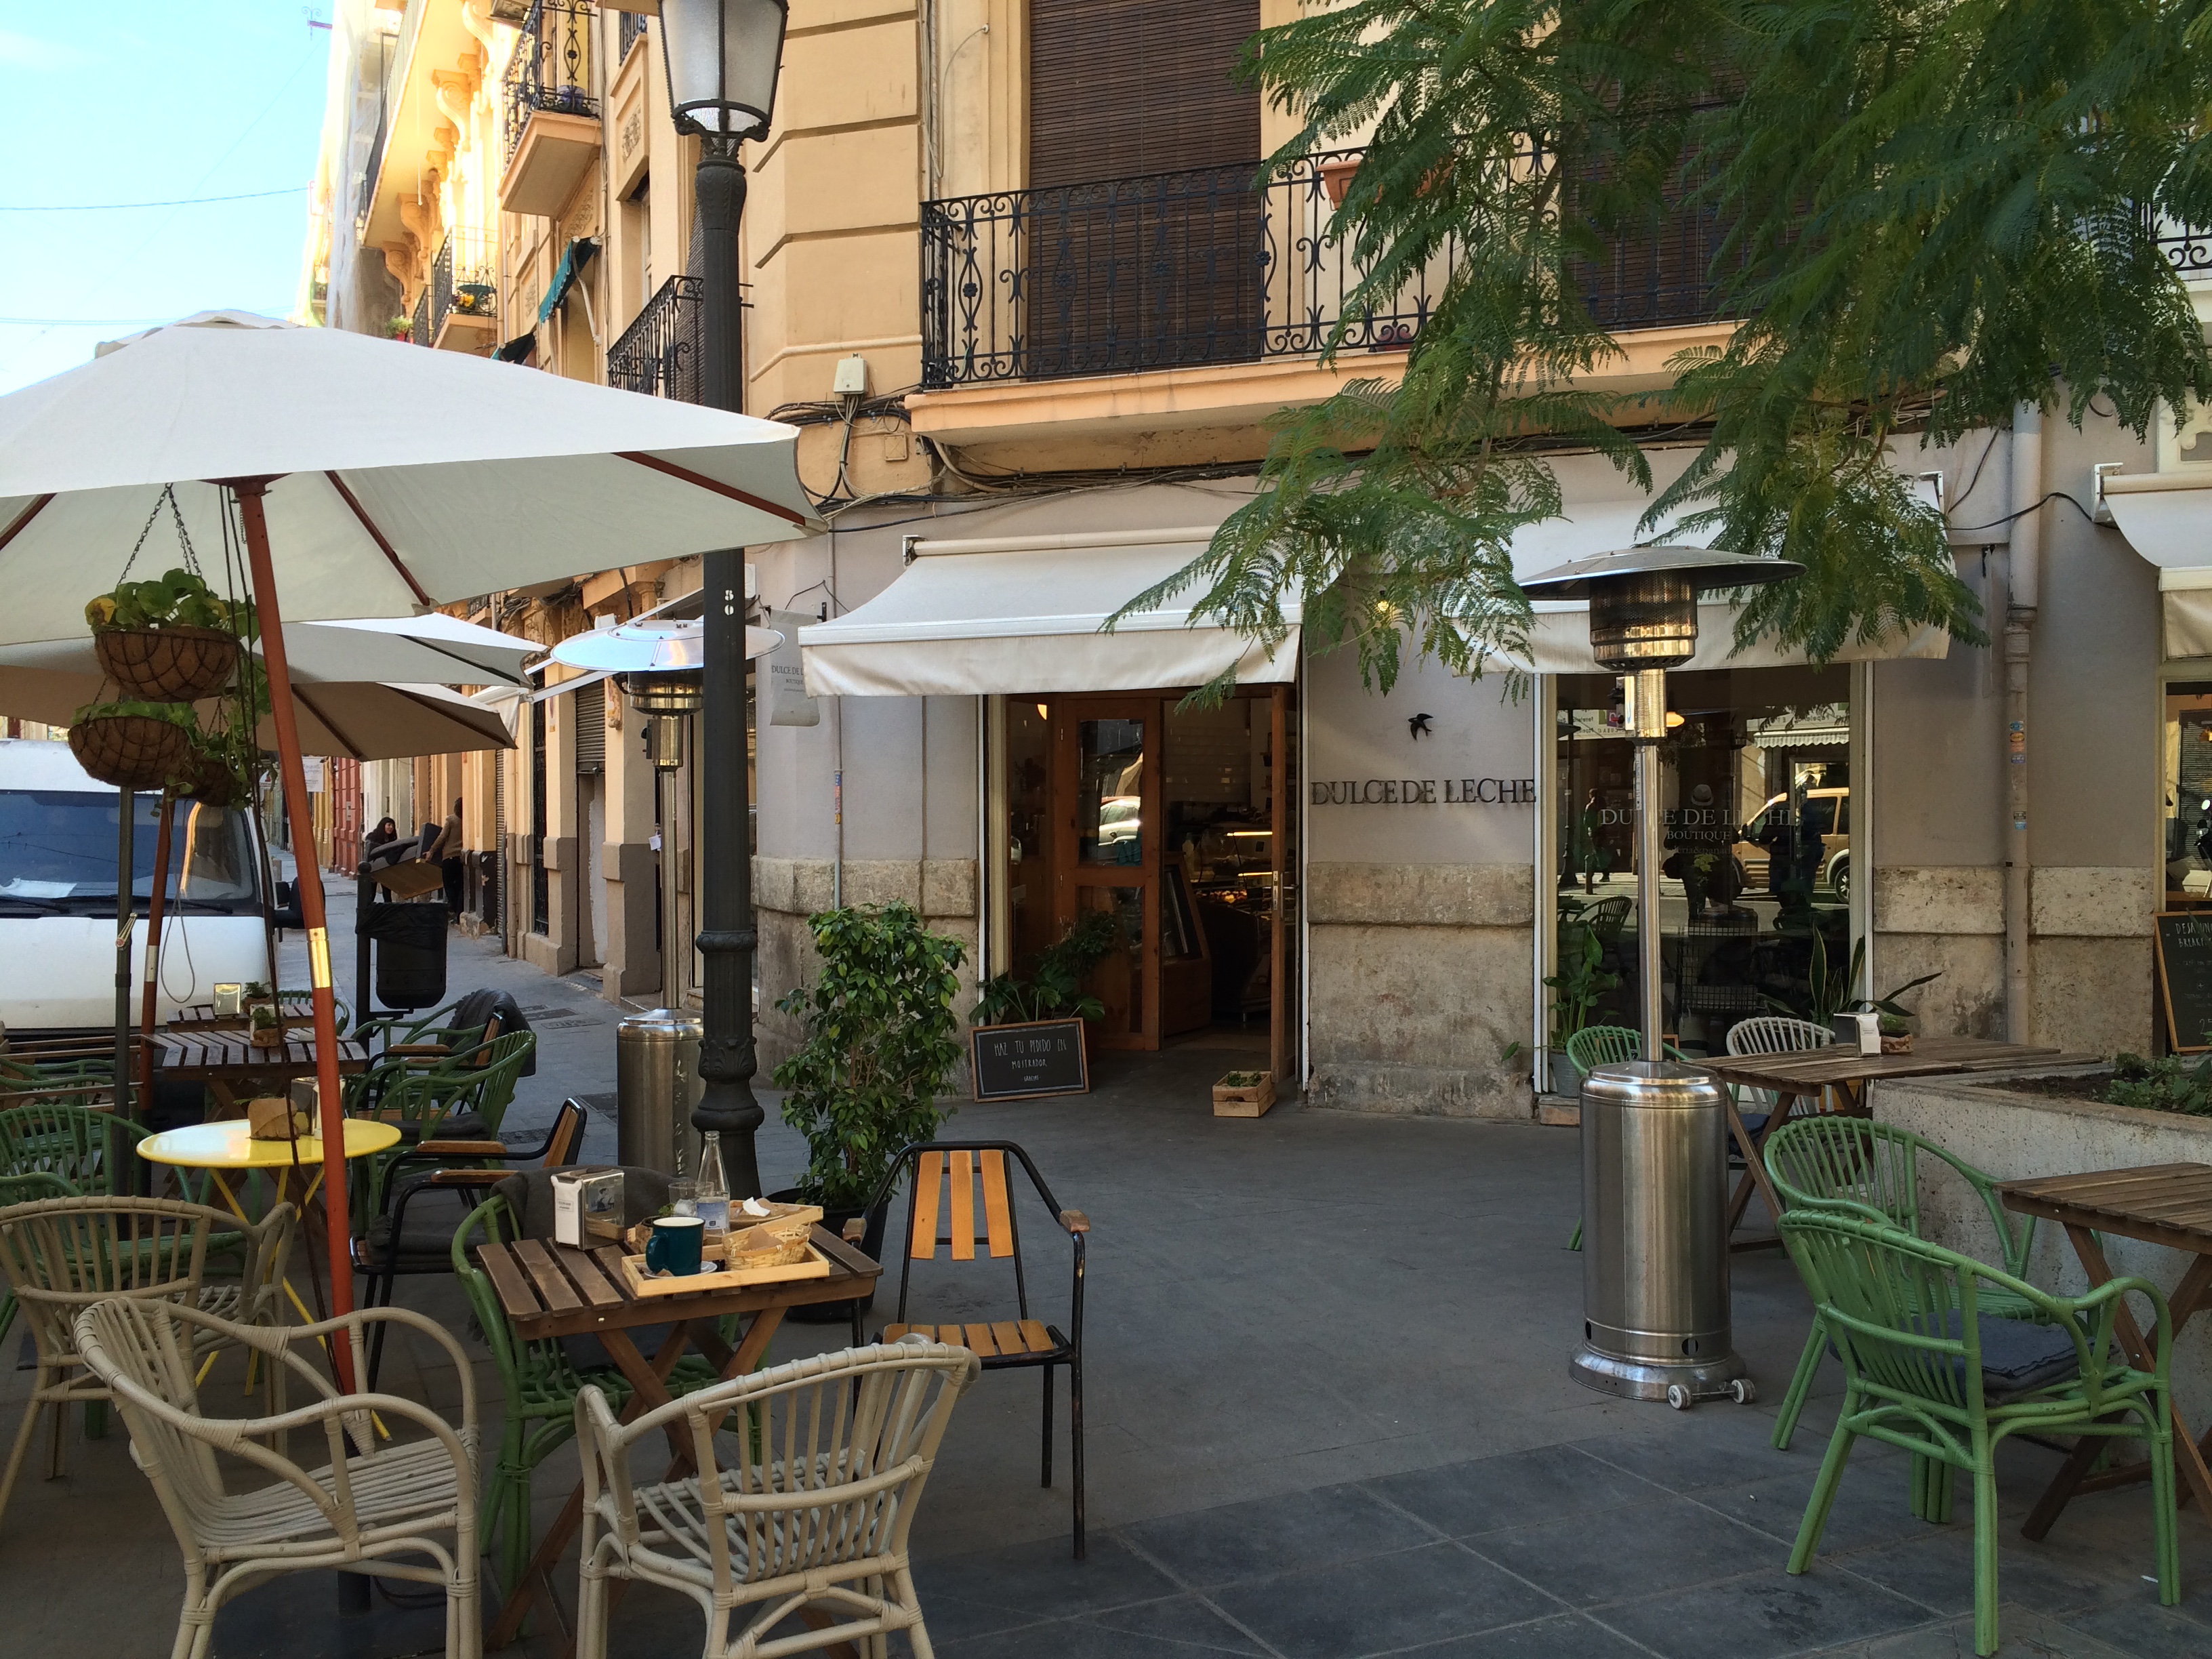 Sardinië – Zien & doen in hoofdstad Cagliari